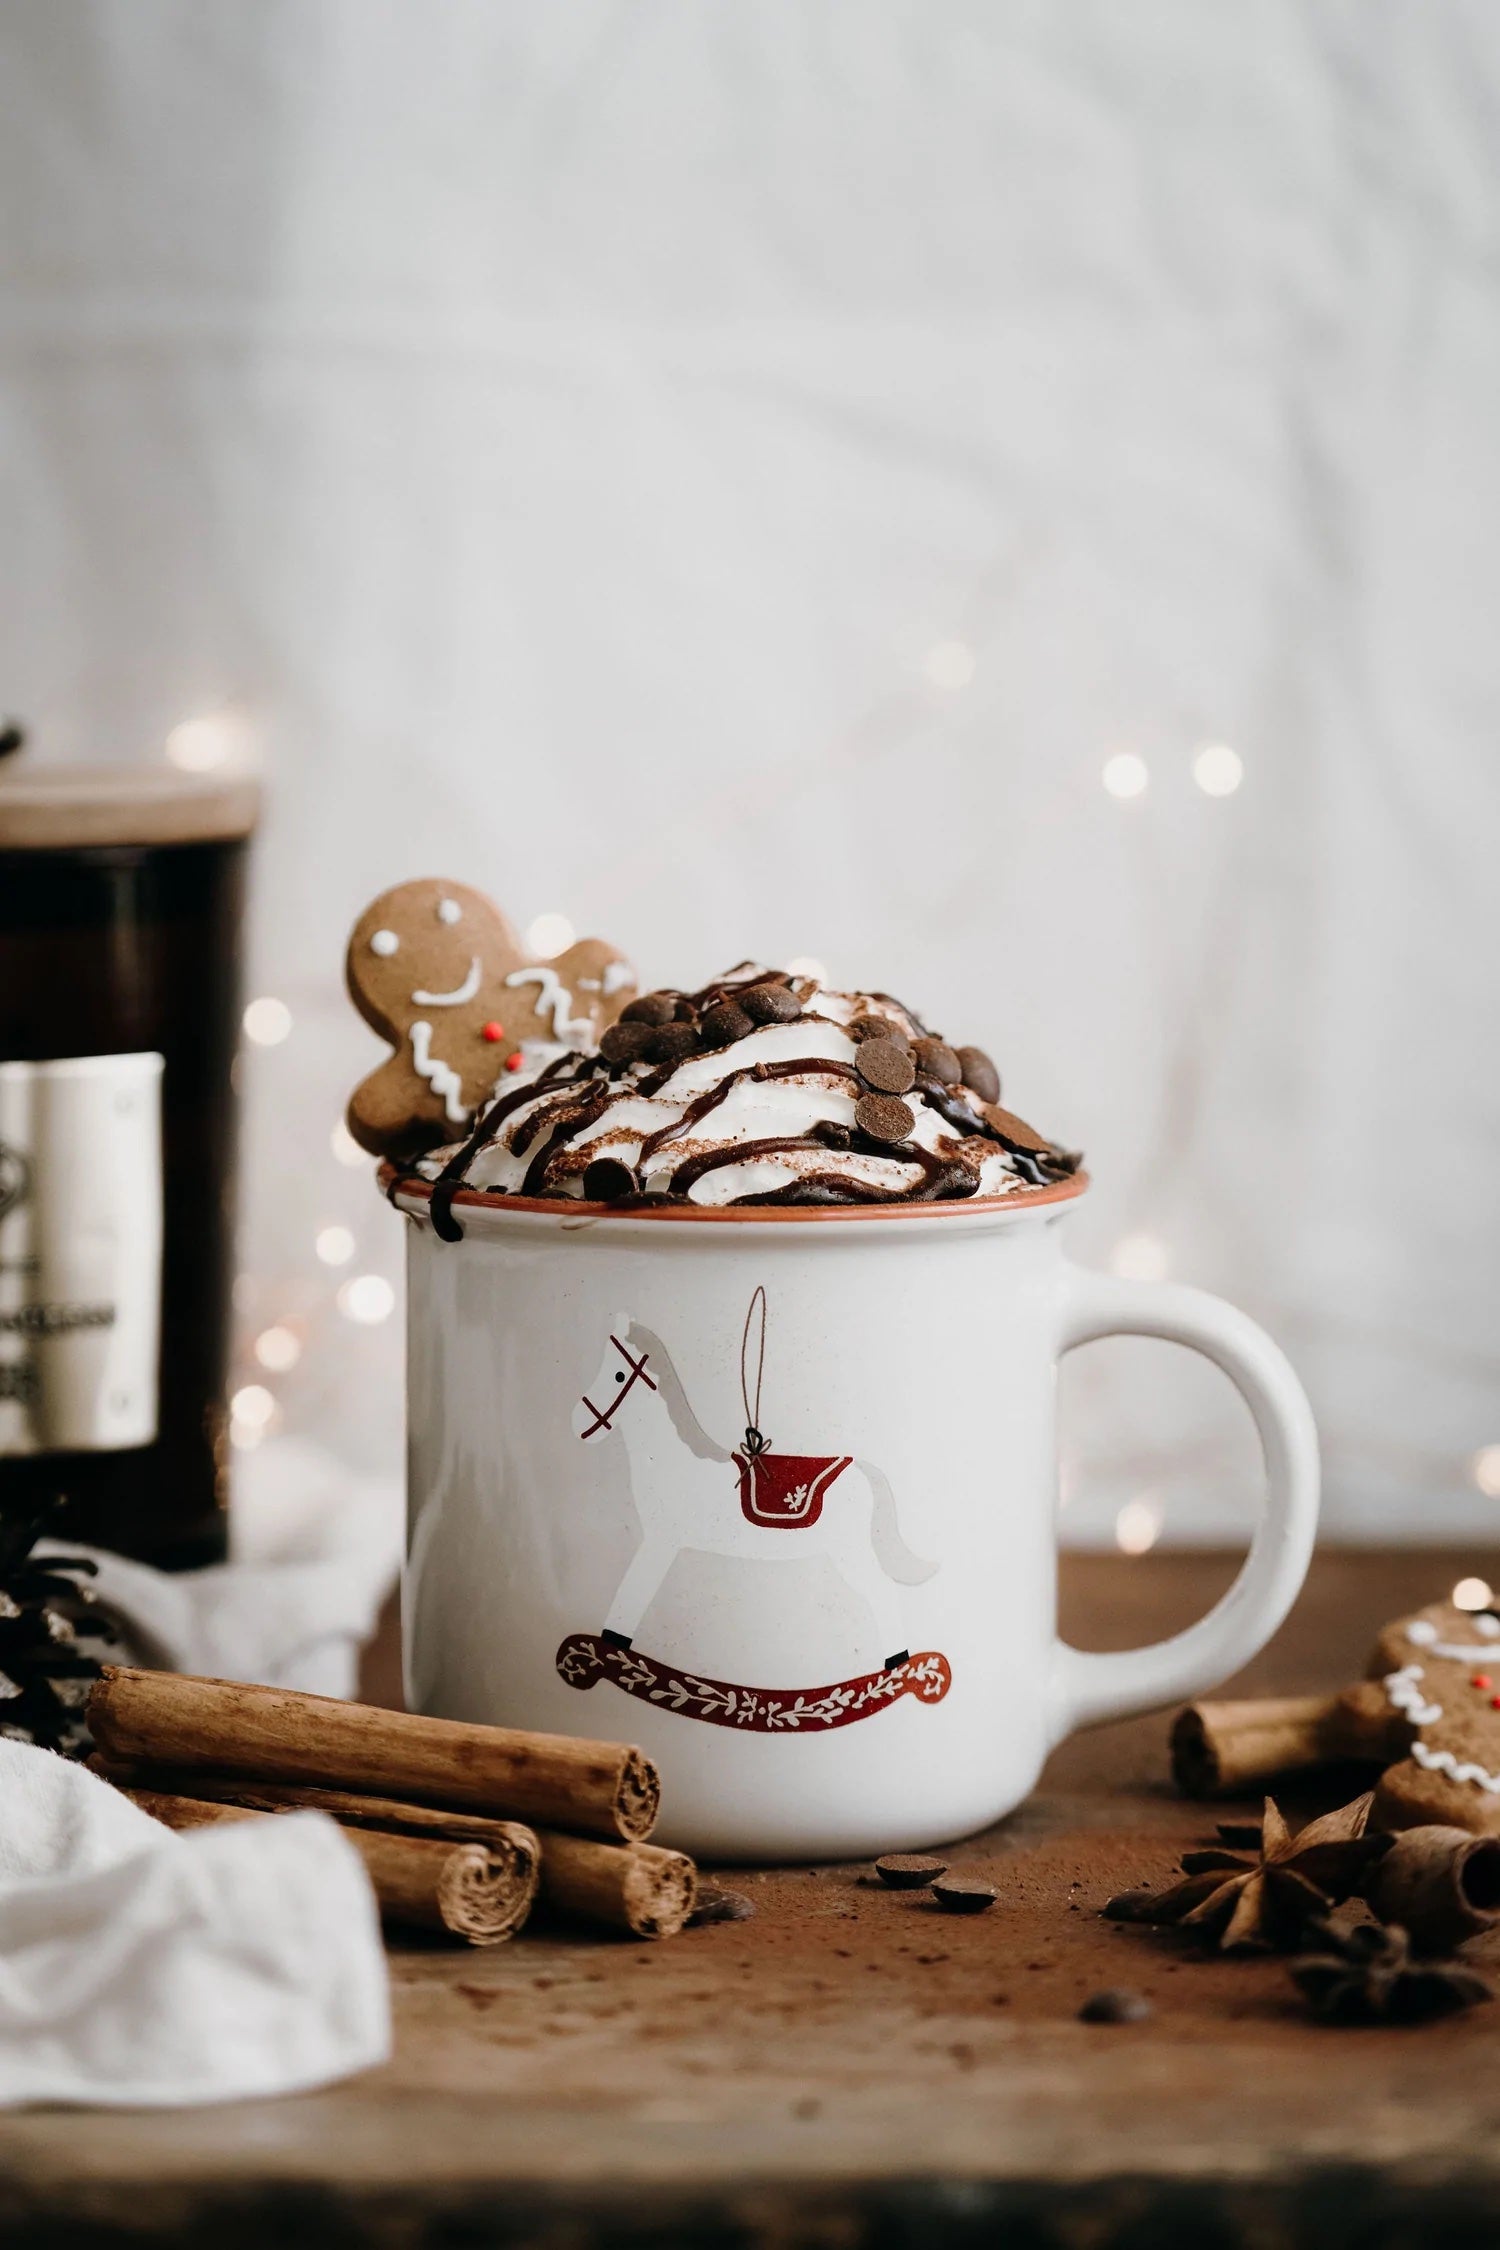 Bencer and hazelnut christmas coffee mug - angus and dudley